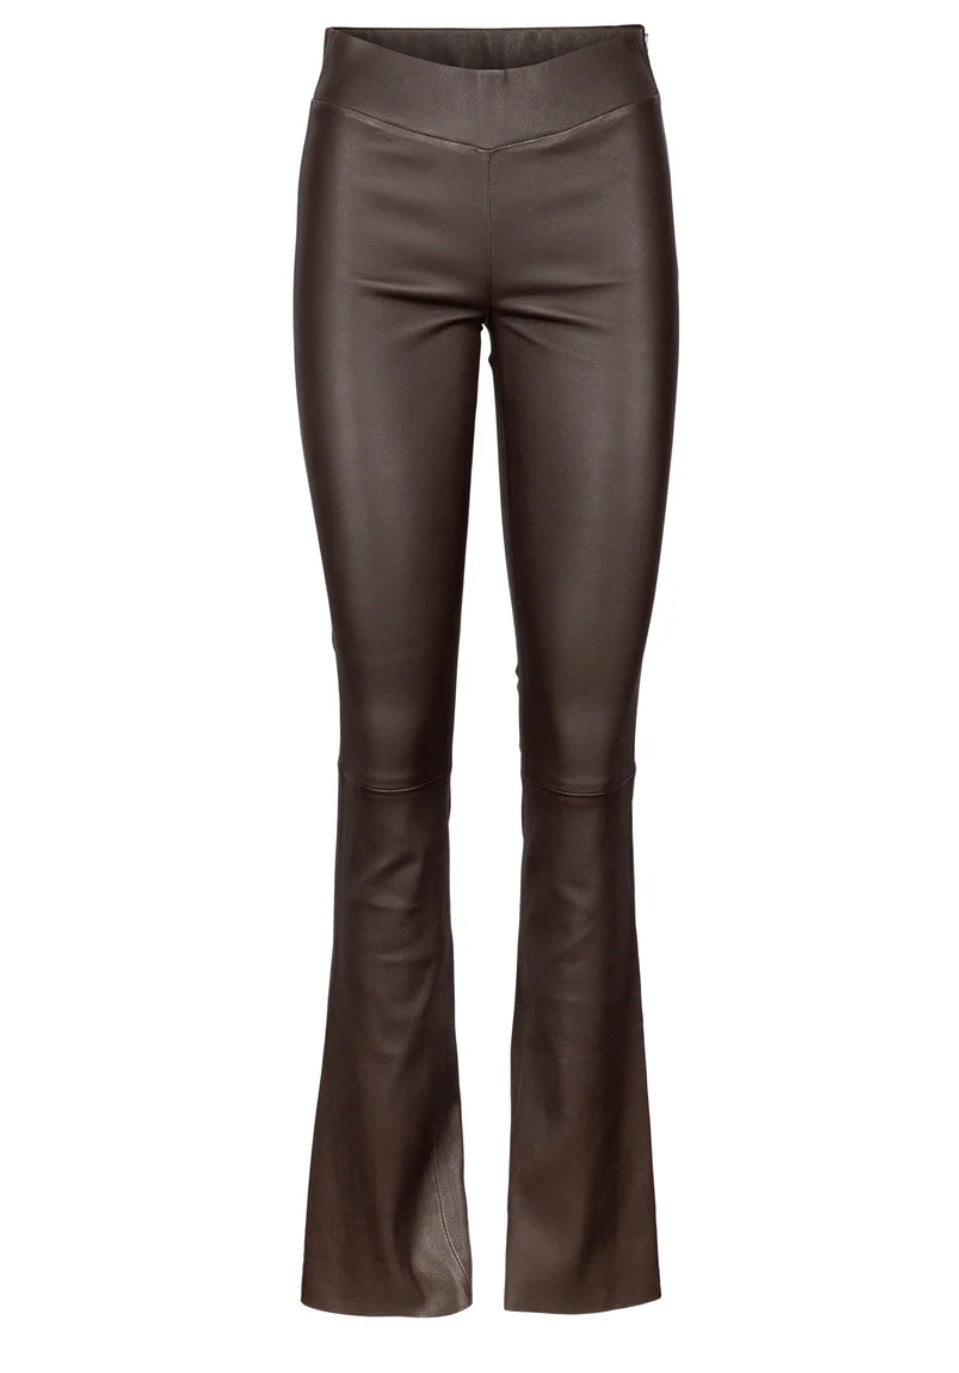 Nicola leather pants